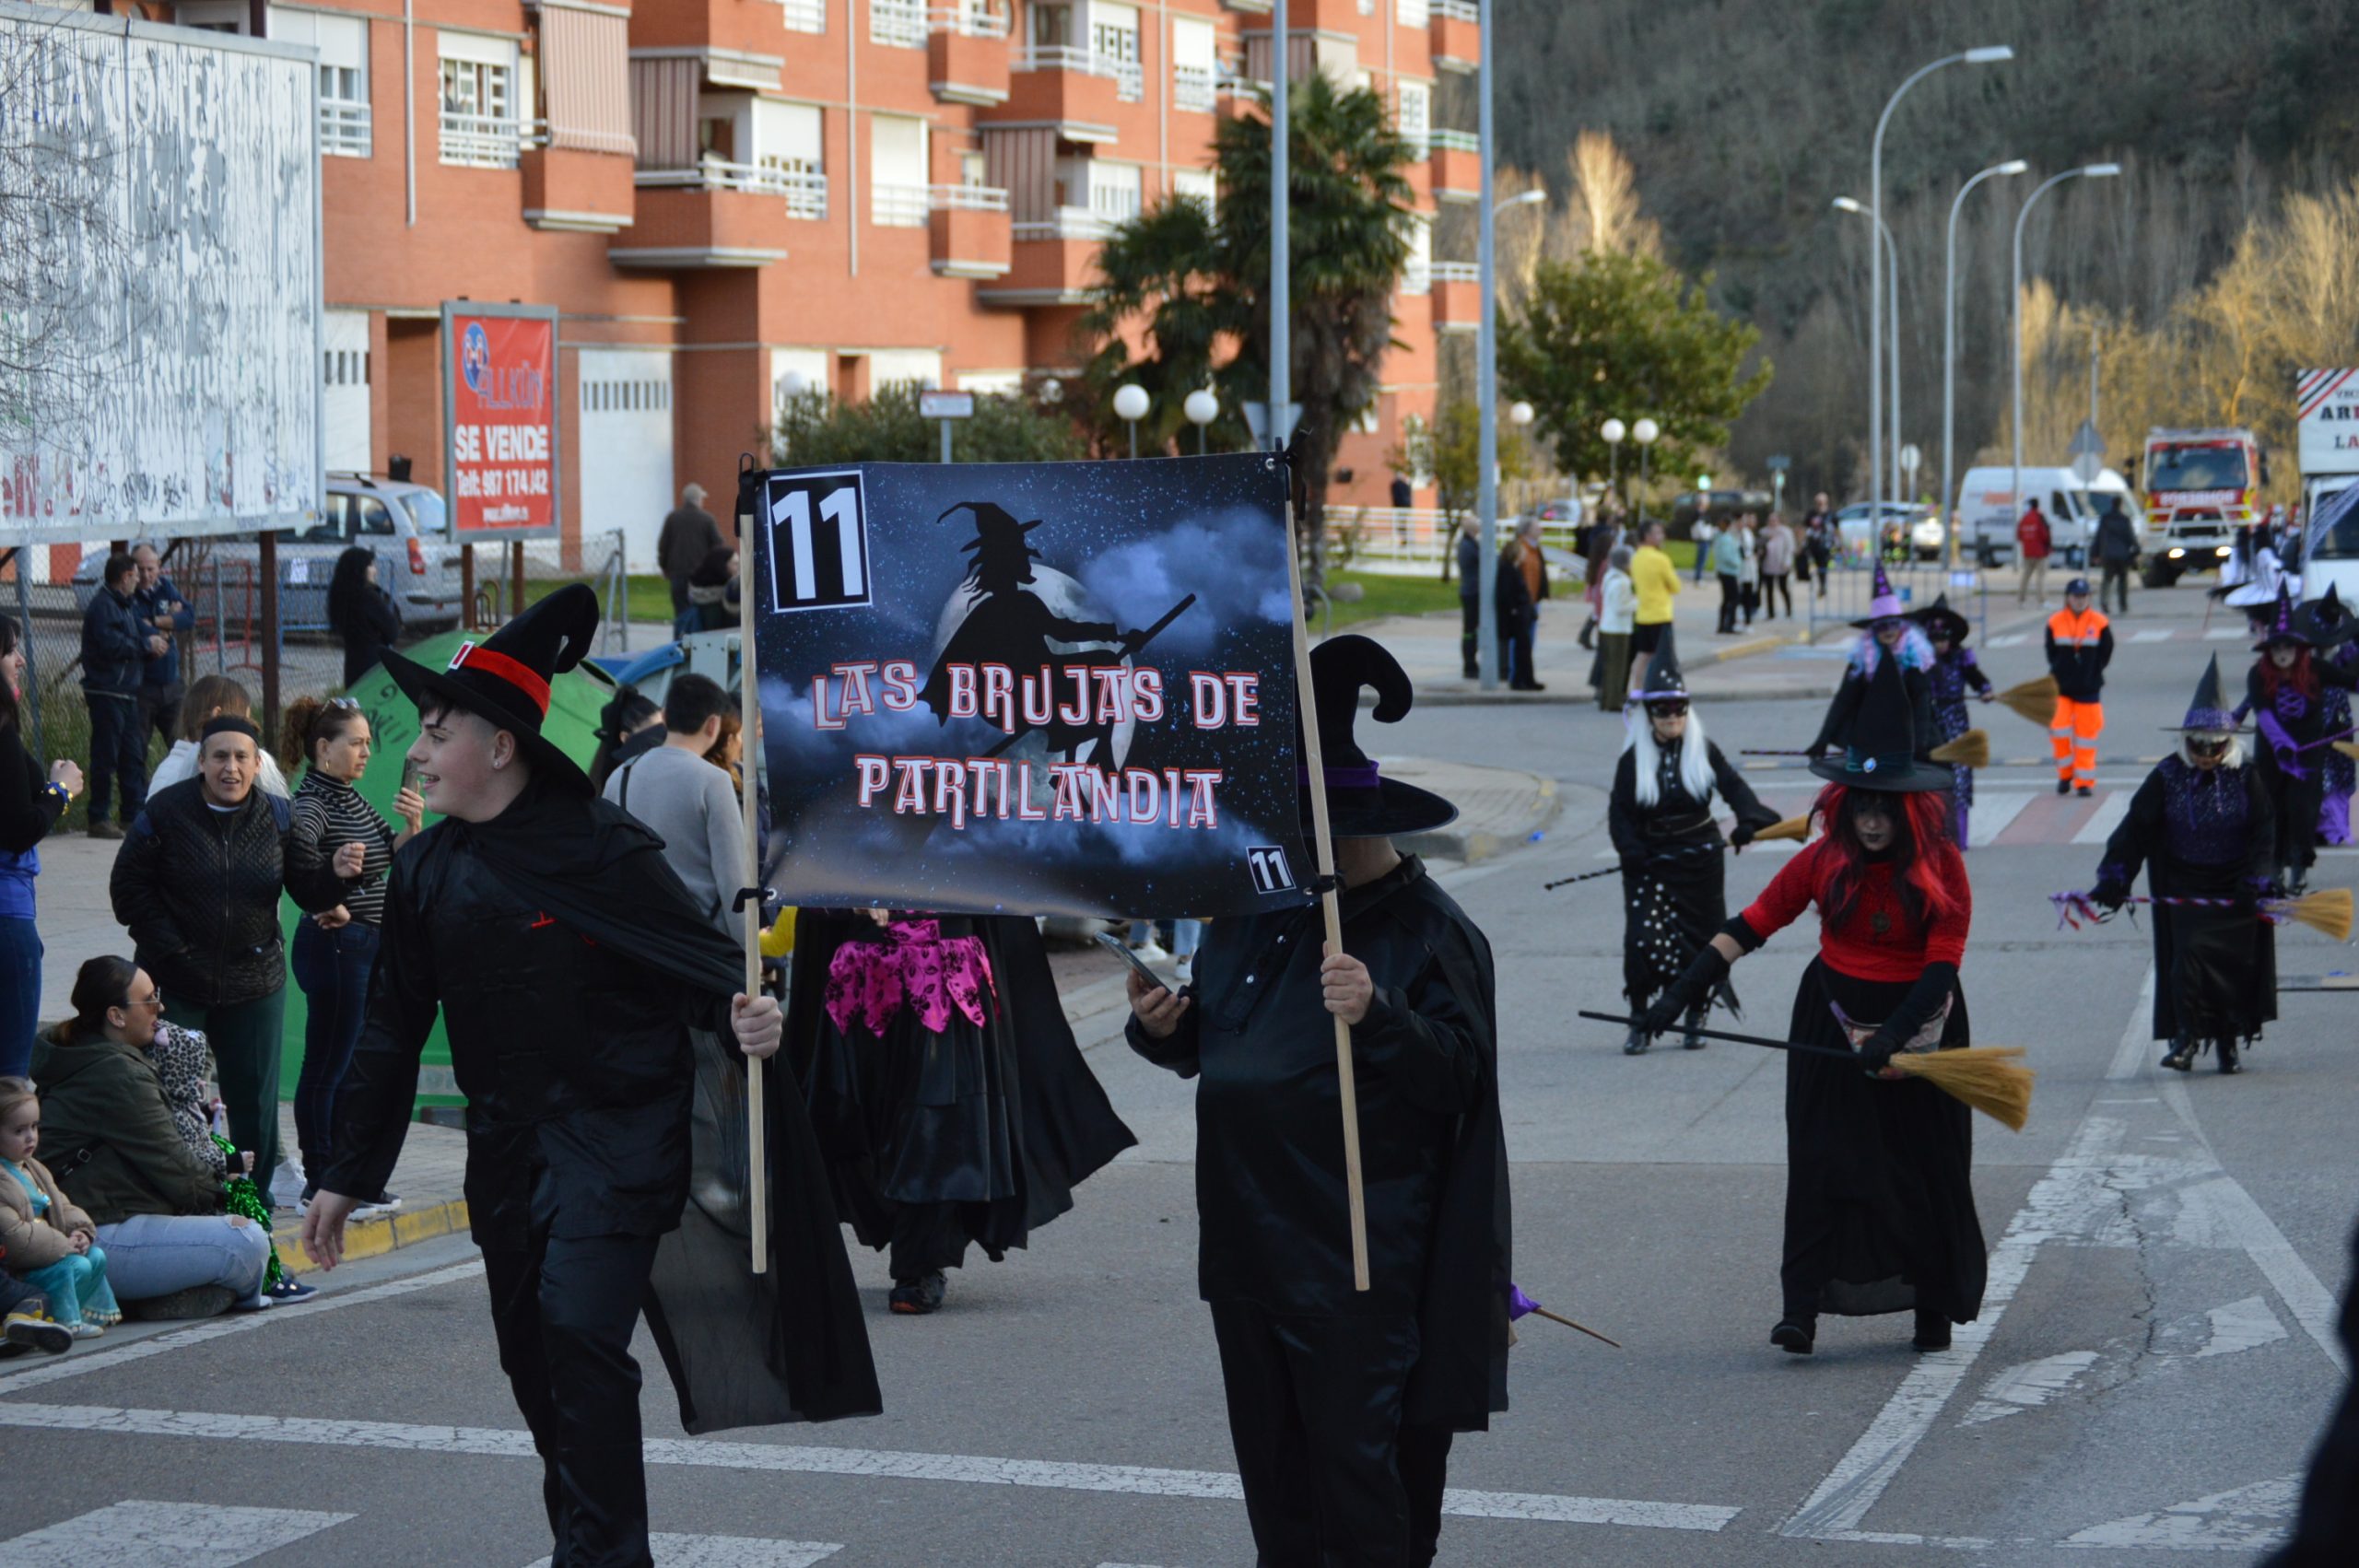 Carnavales en Ponferrada, el sol saca a la calle a miles de ponferradinos para disfrutar del desfile 53